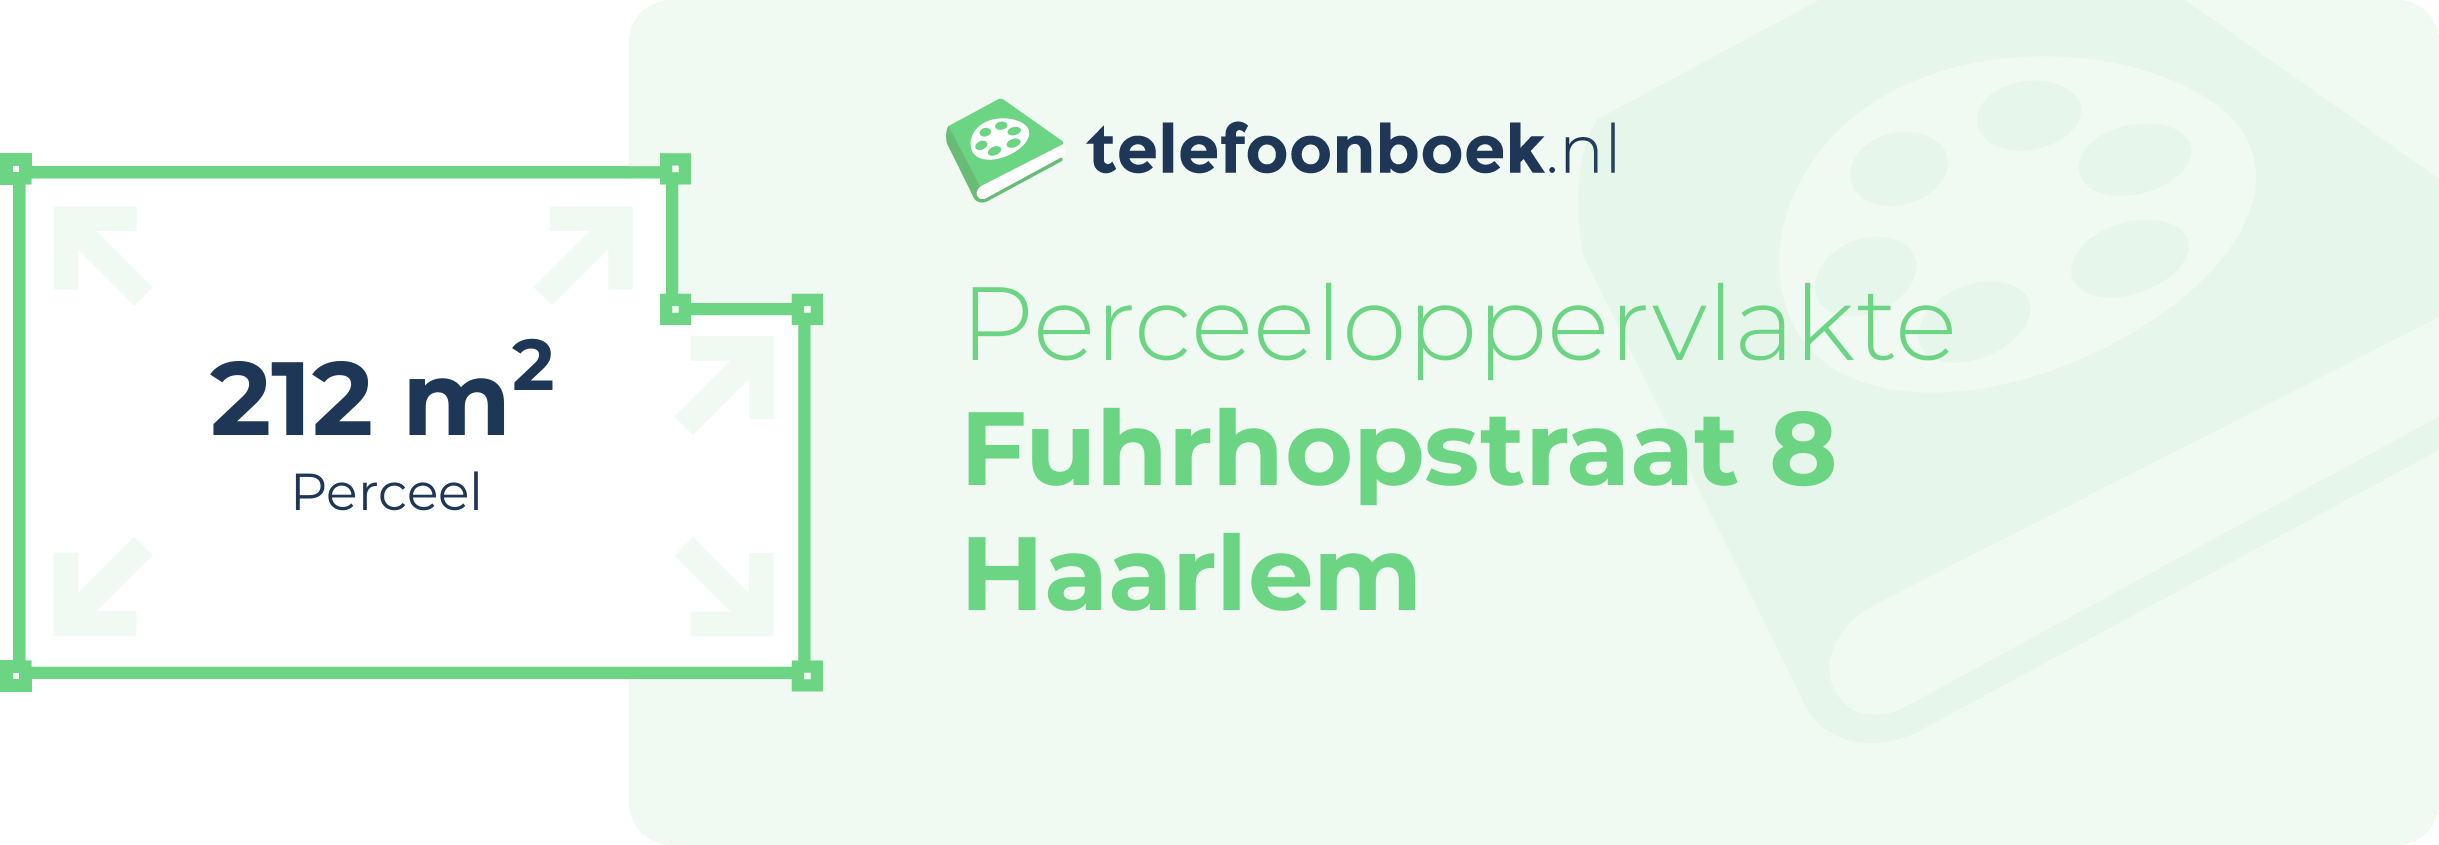 Perceeloppervlakte Fuhrhopstraat 8 Haarlem